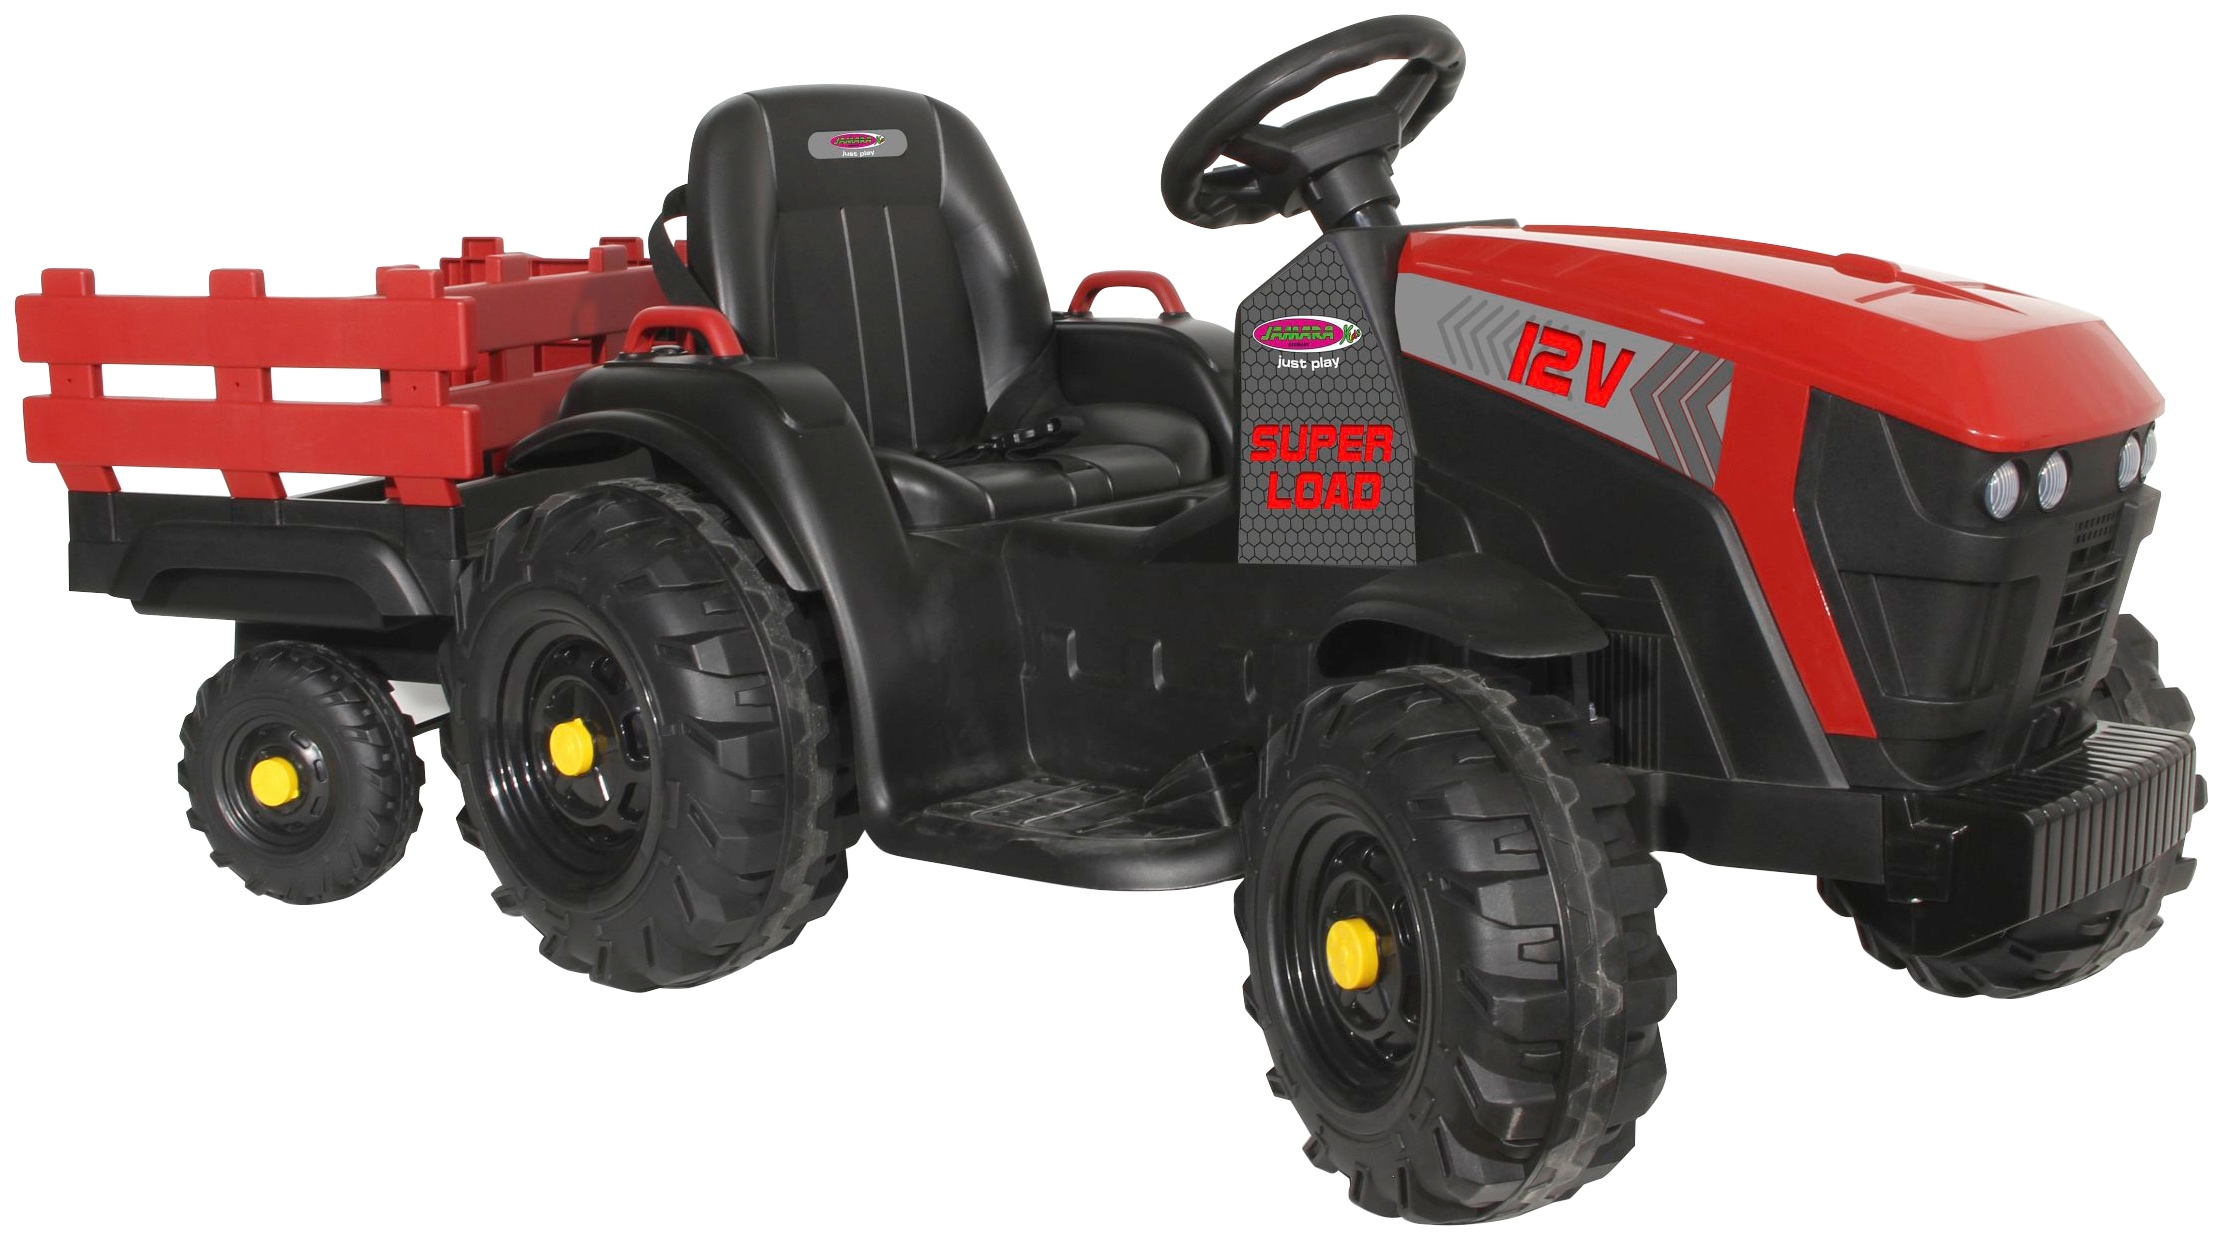 Jamara Elektro-Kindertraktor Ride-on Traktor Super Load, Belastbarkeit 28  kg, mit Anhänger, Schlüsselloser Startvorgang per Startknopf